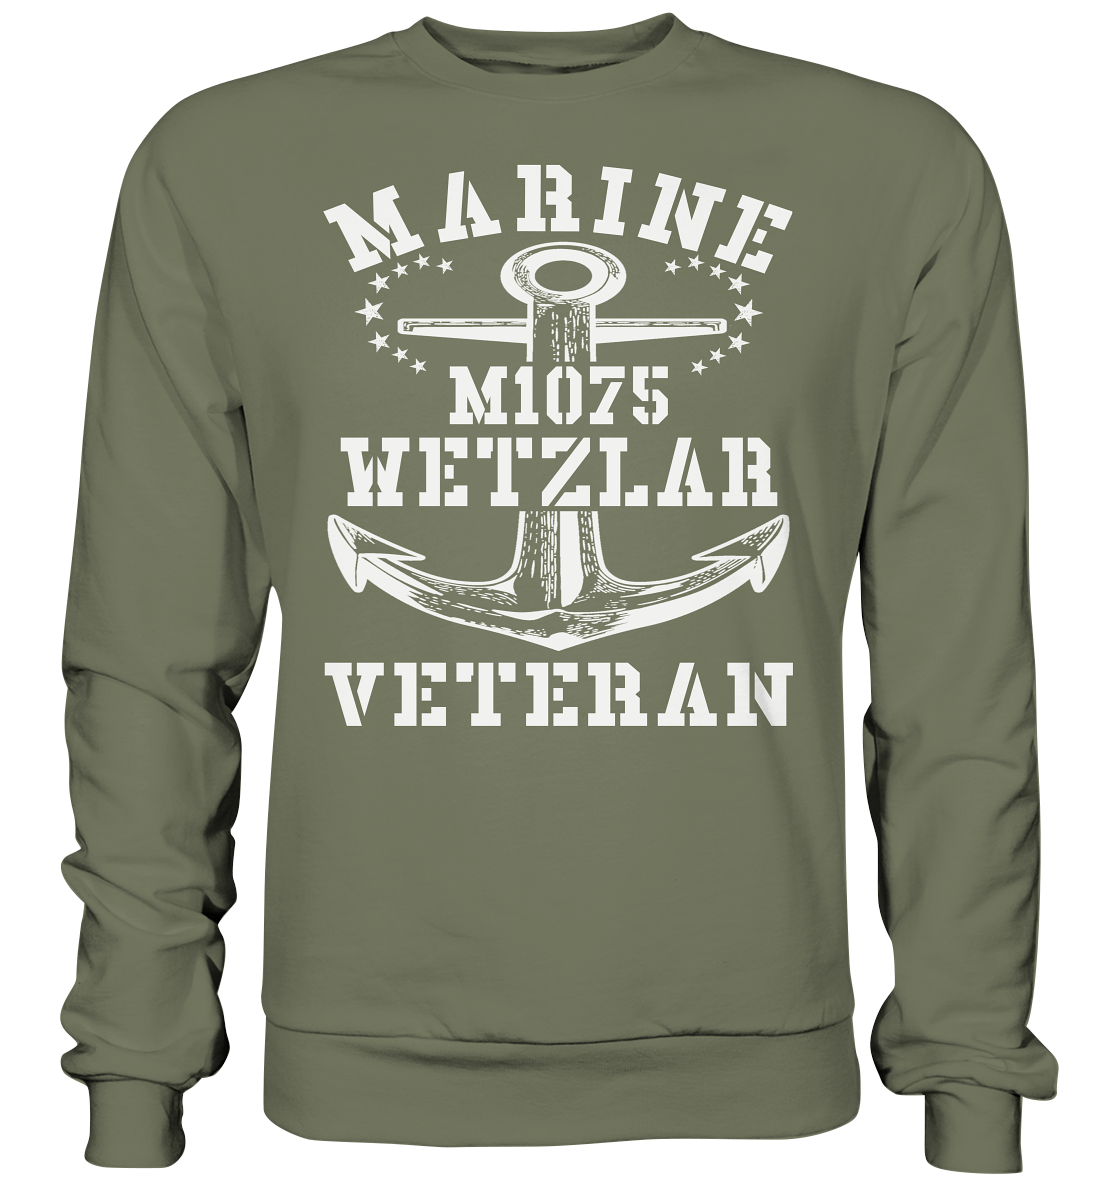 MARINE VETERAN M1075 WETZLAR - Premium Sweatshirt